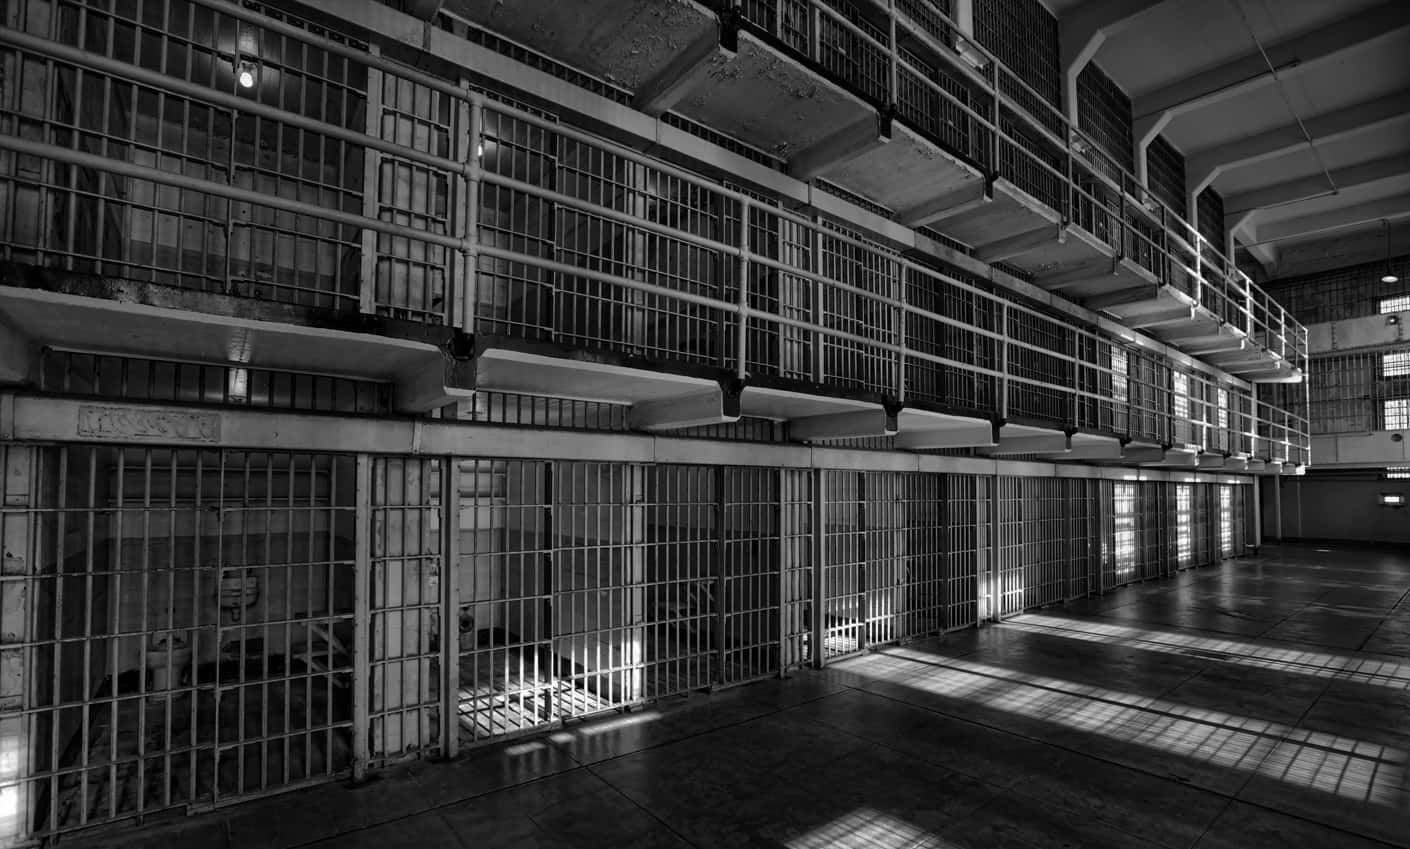 Einseltener Einblick In Eine Gefängniszelle